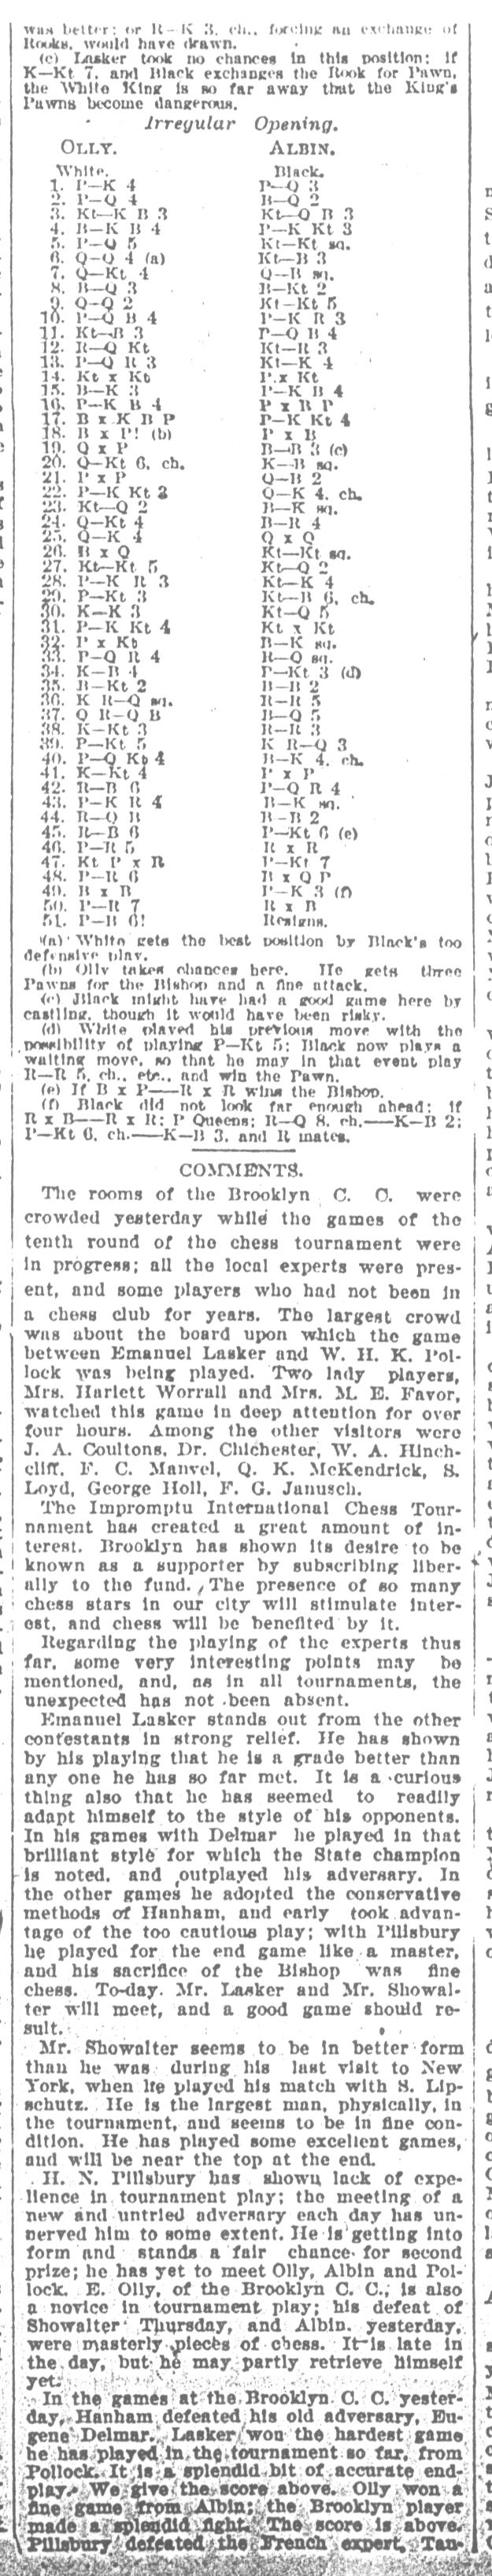 1893.10.14-02 Brooklyn Daily Standard-Union.jpg